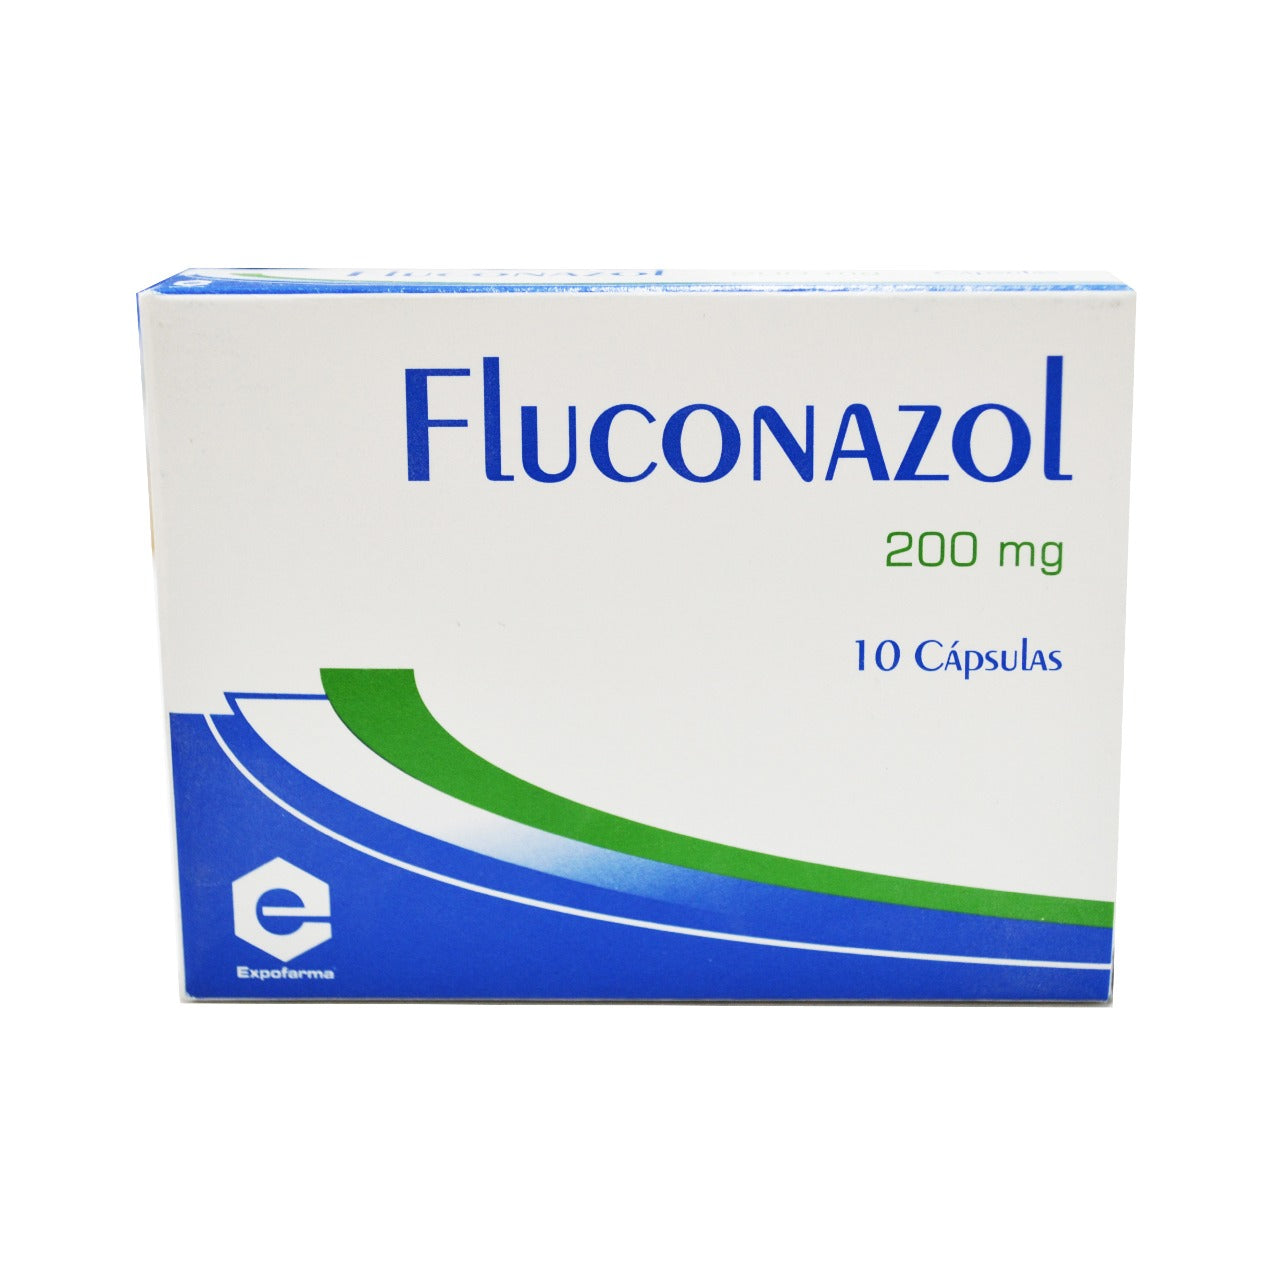 FLUCONAZOL 200 MG 10 CAPSULAS EX